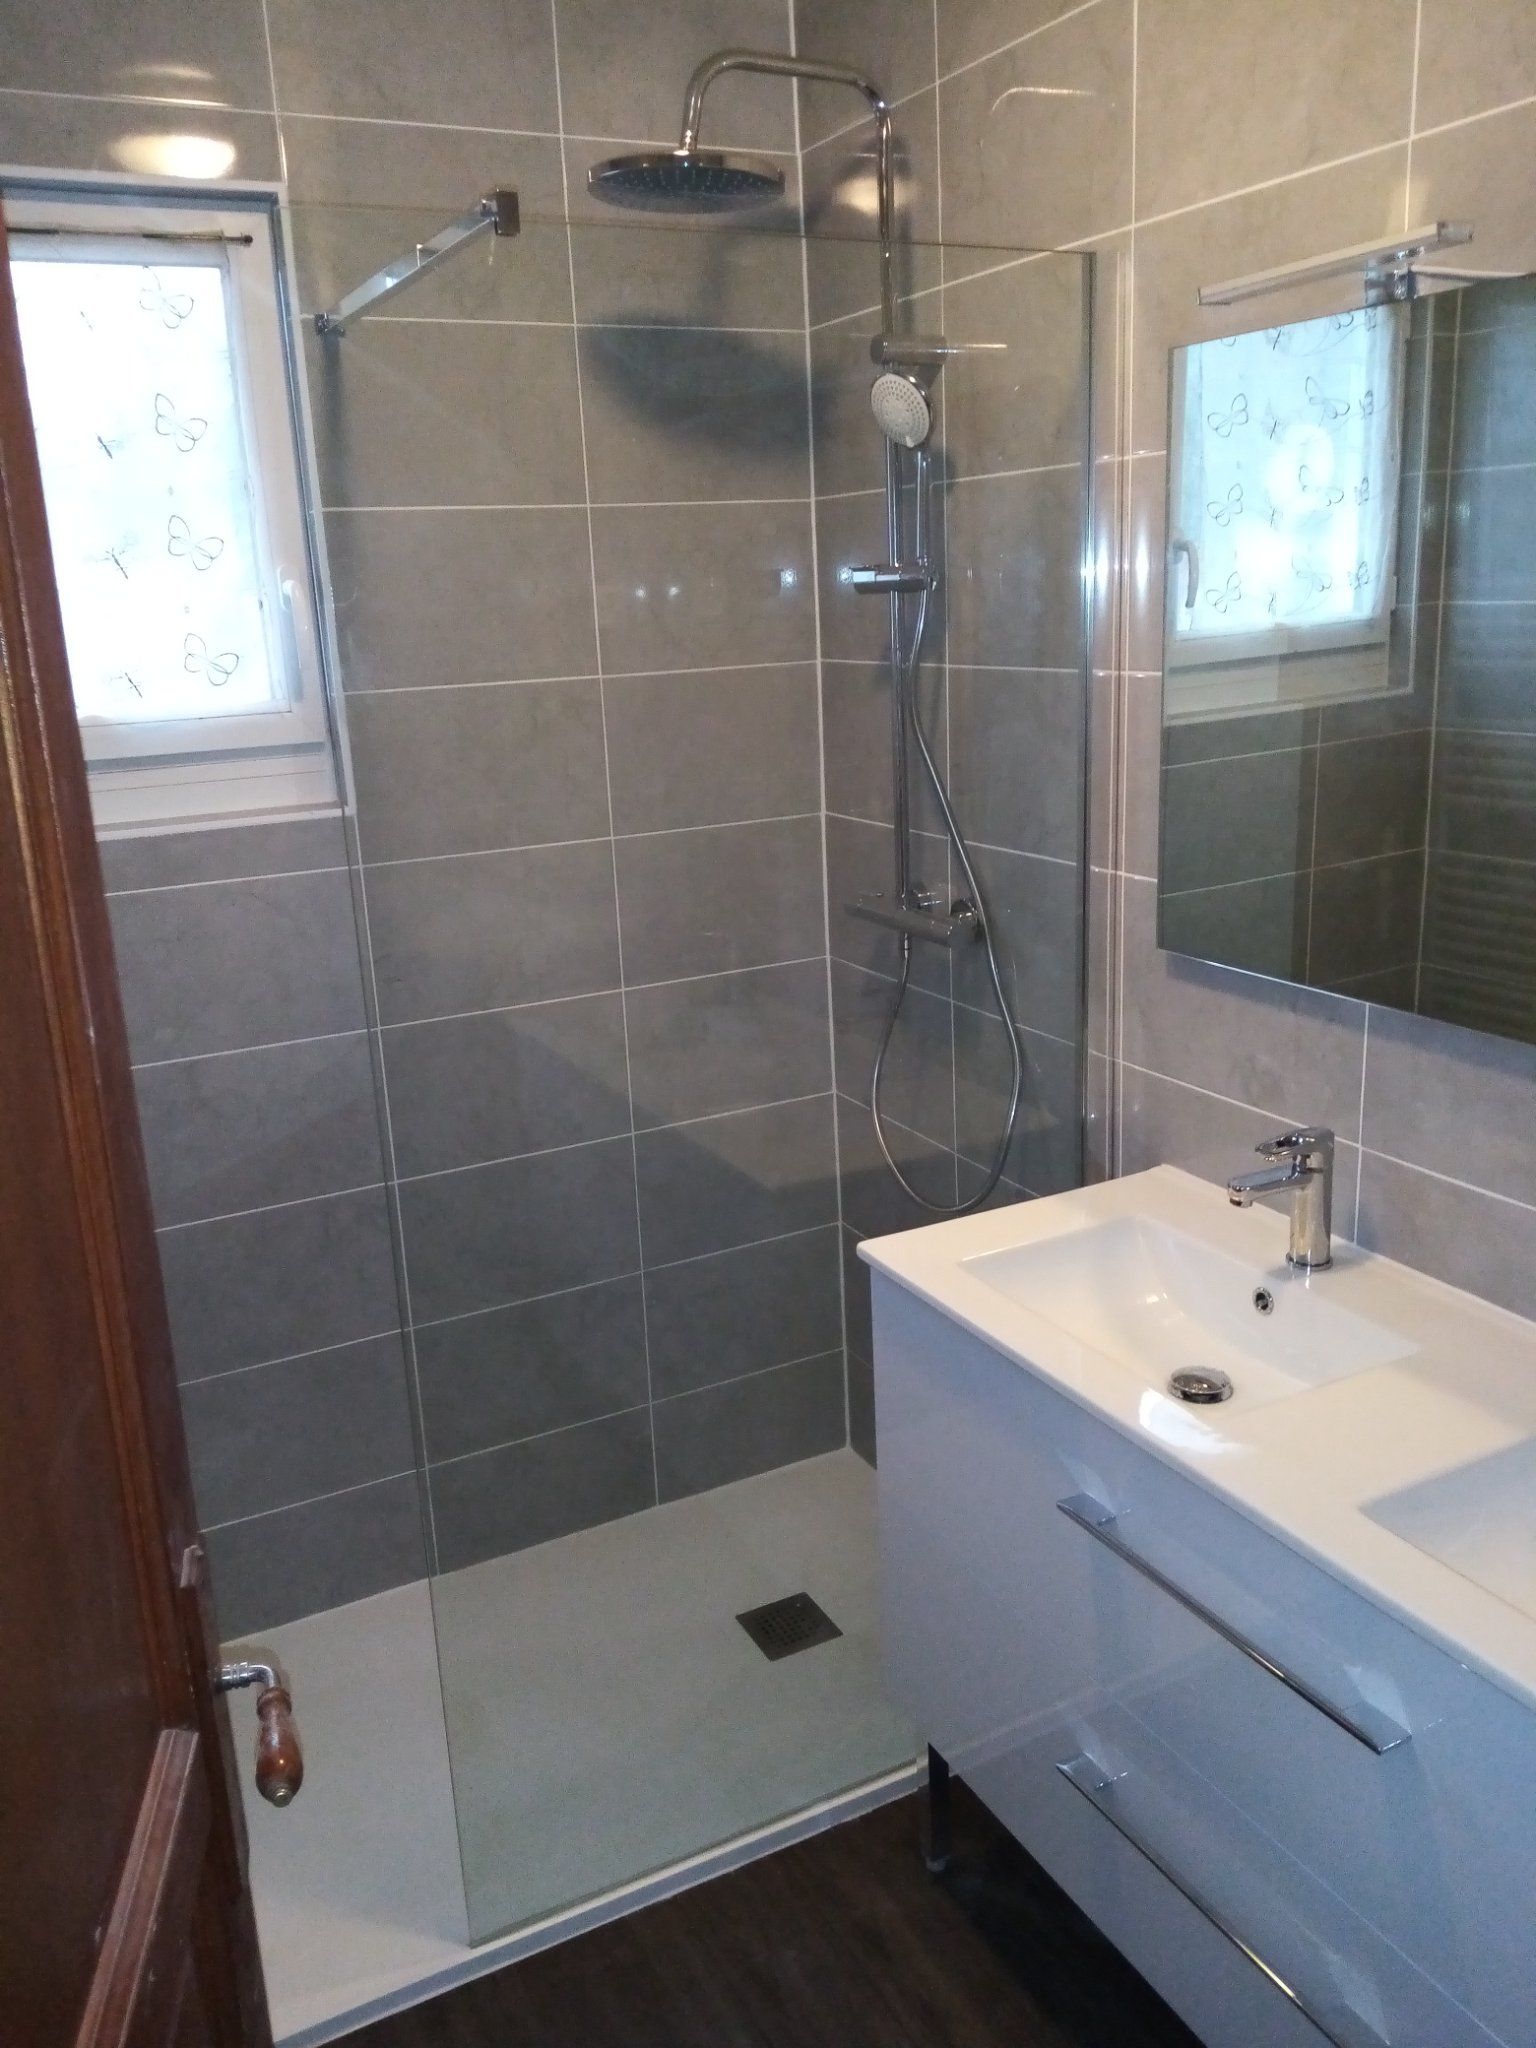 Salle de bains : Rénovation; 4 m2 - Travaux.com